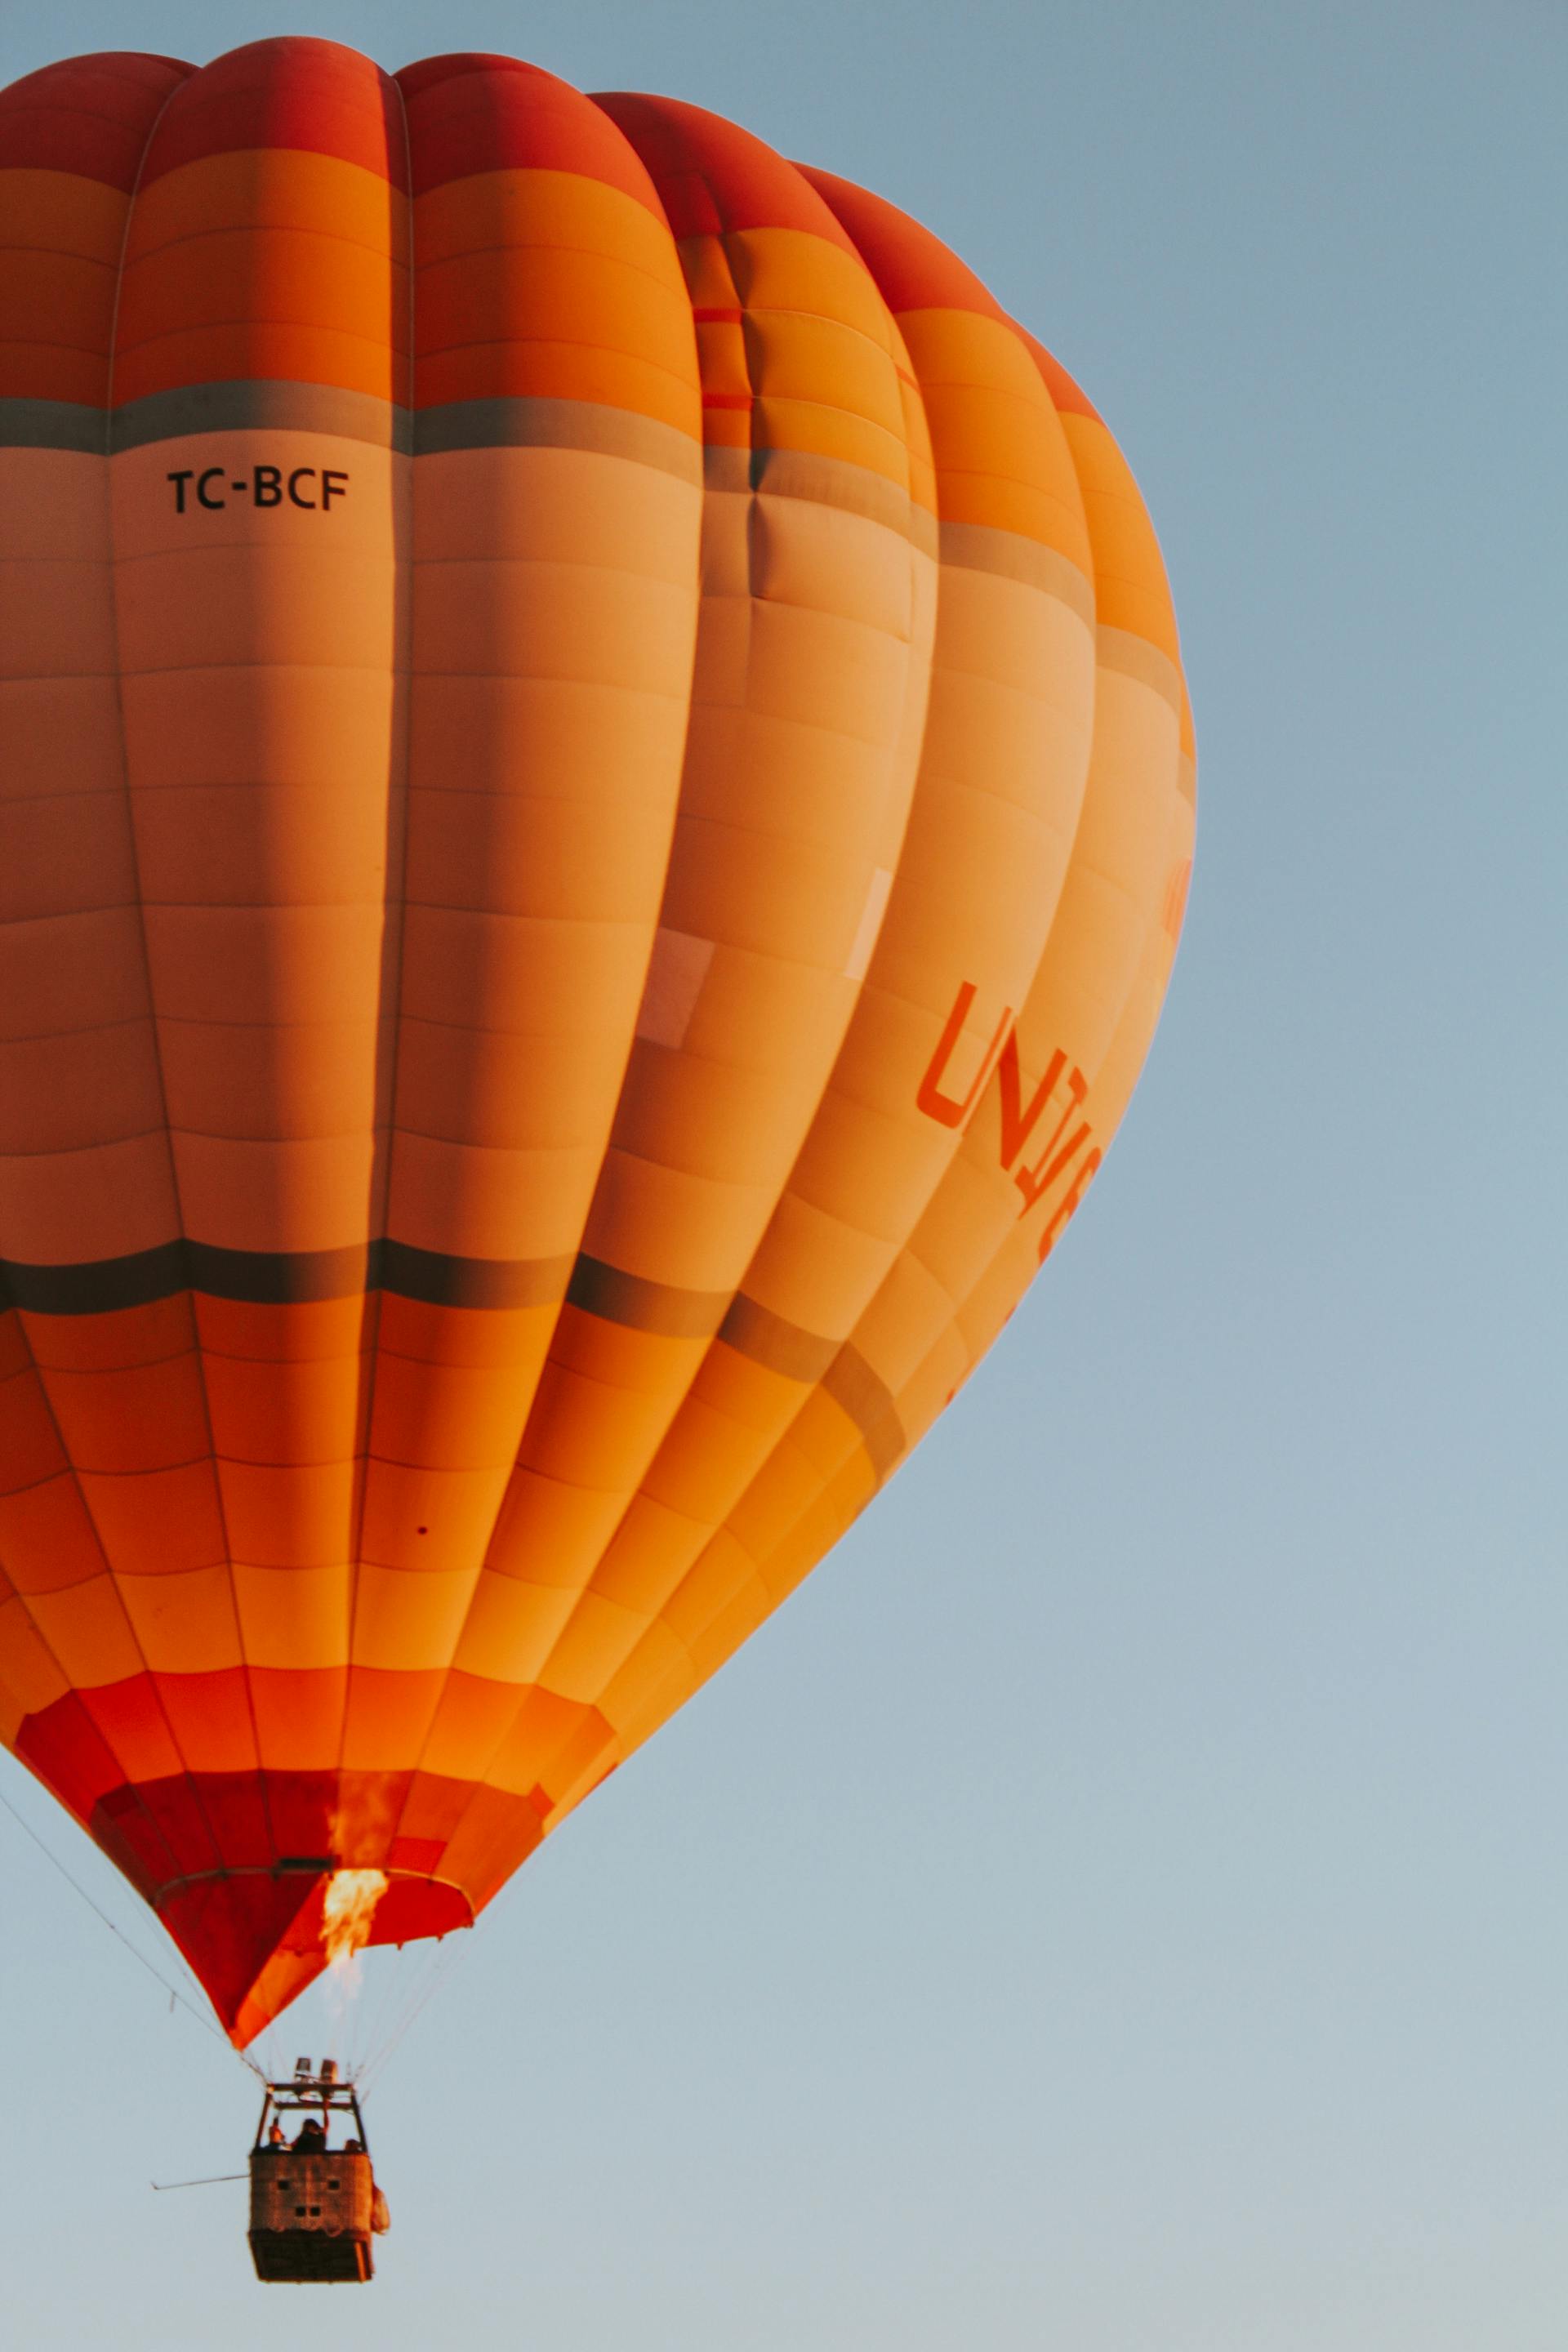 Une montgolfière dans le ciel | Source : Pexels